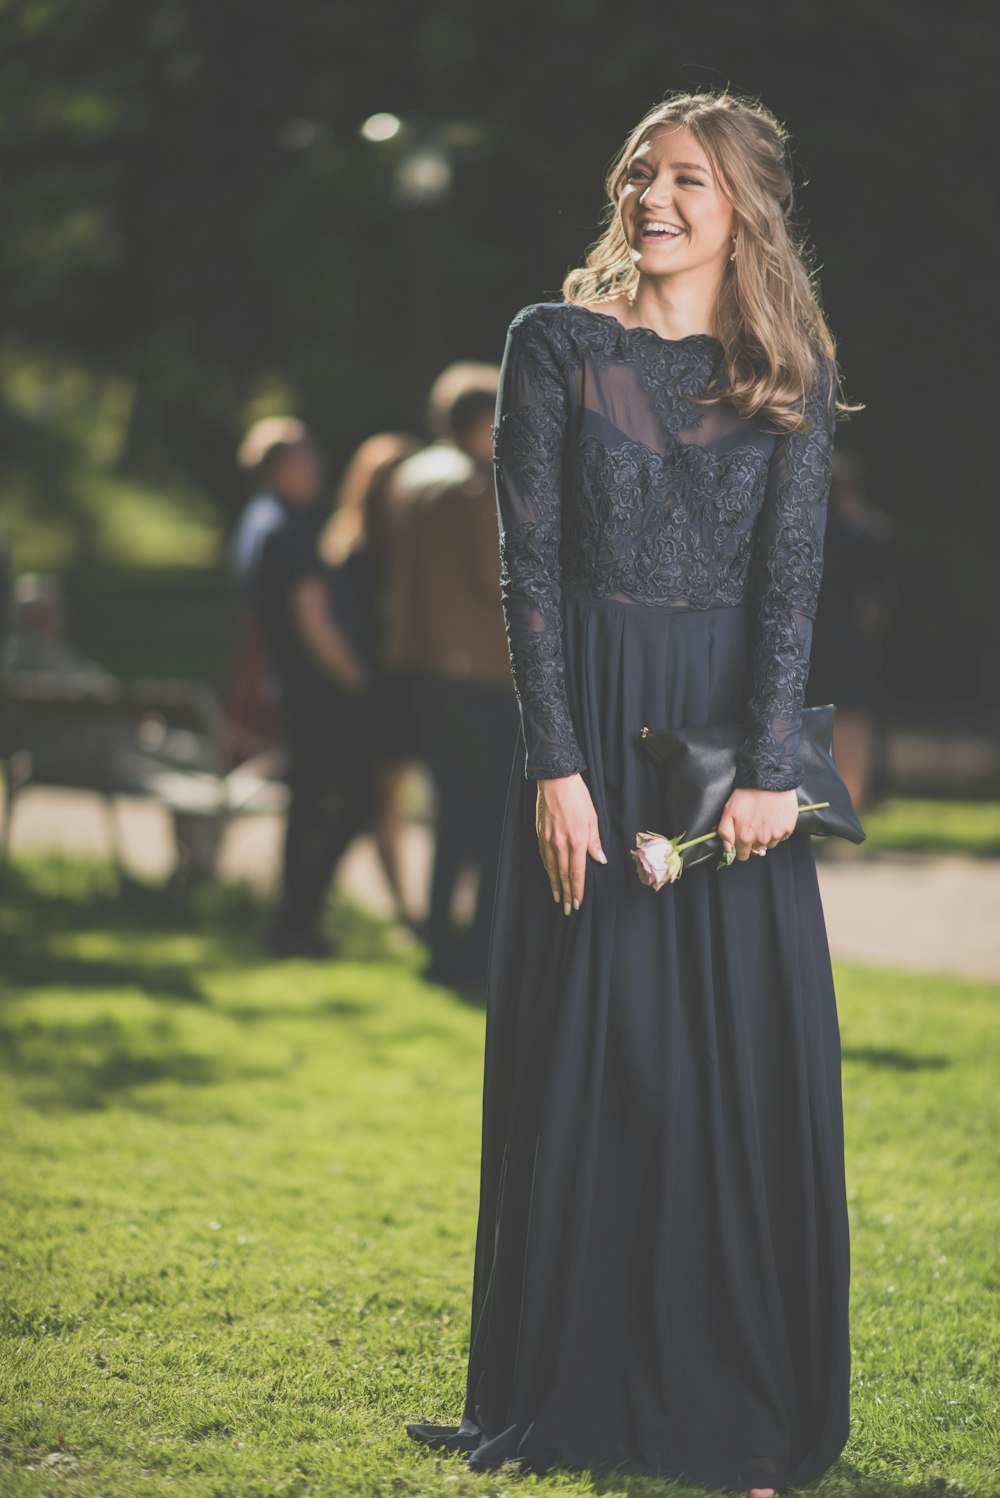 낮 동안 푸른 잔디밭에 서 있는 검은 긴팔 드레스를 입은 여자